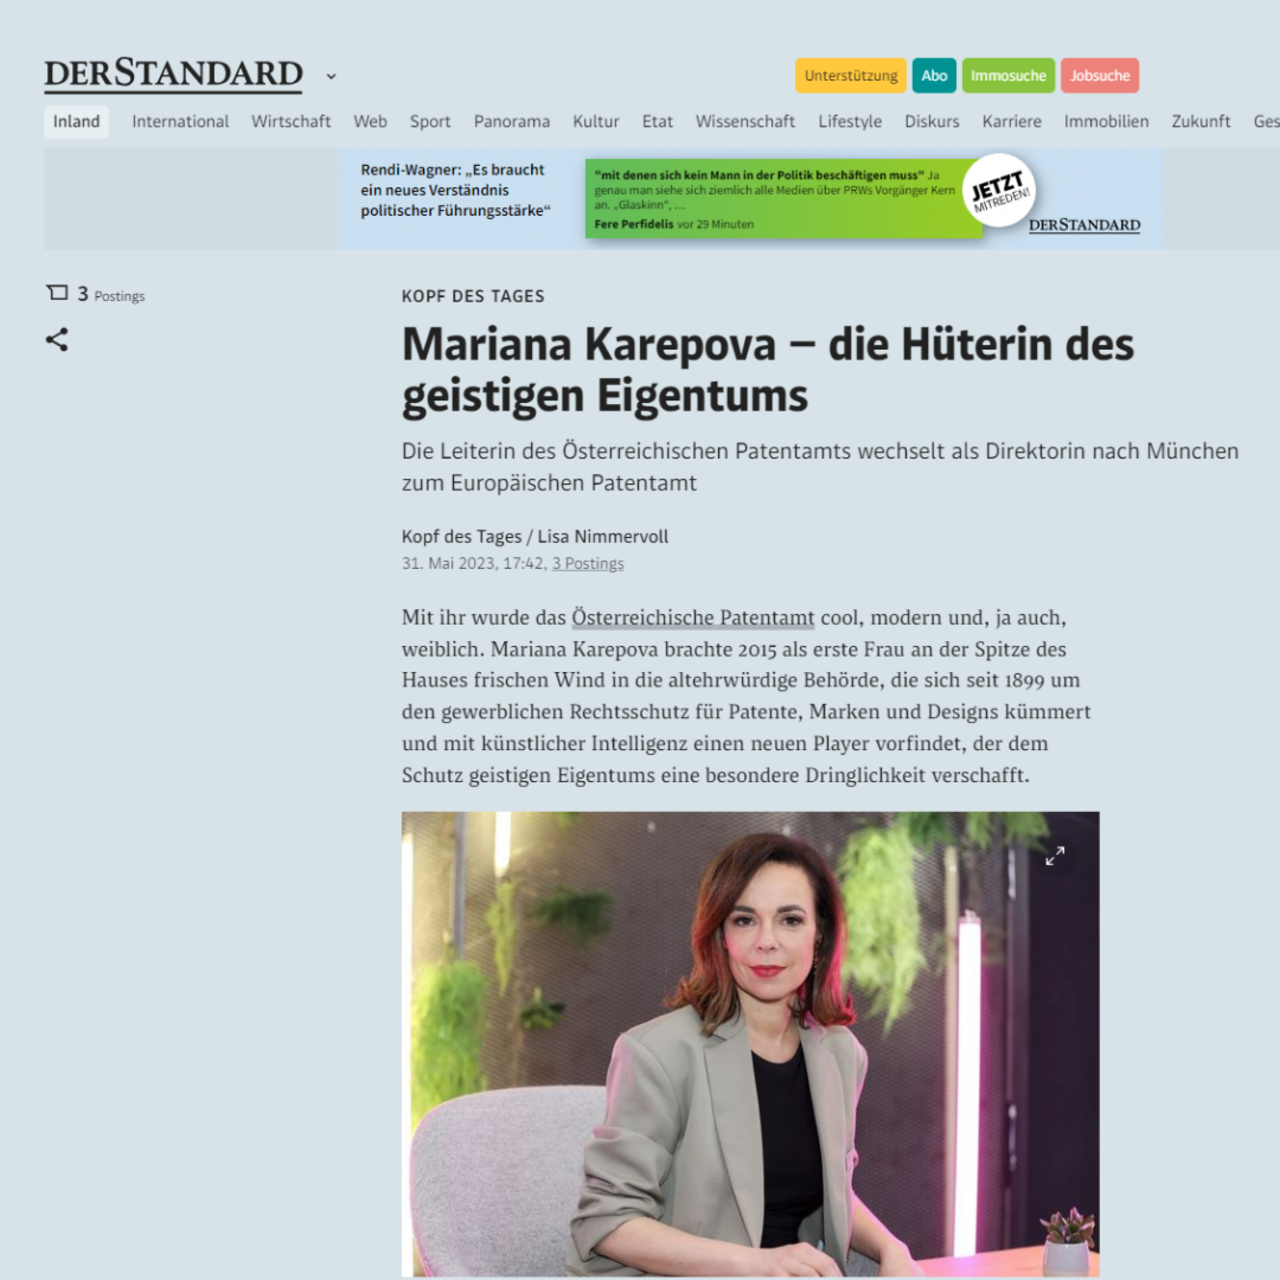 Artikel im Standard: Die Leiterin des Österreichischen Patentamts wechselt als Direktorin nach München zum Europäischen Patentamt